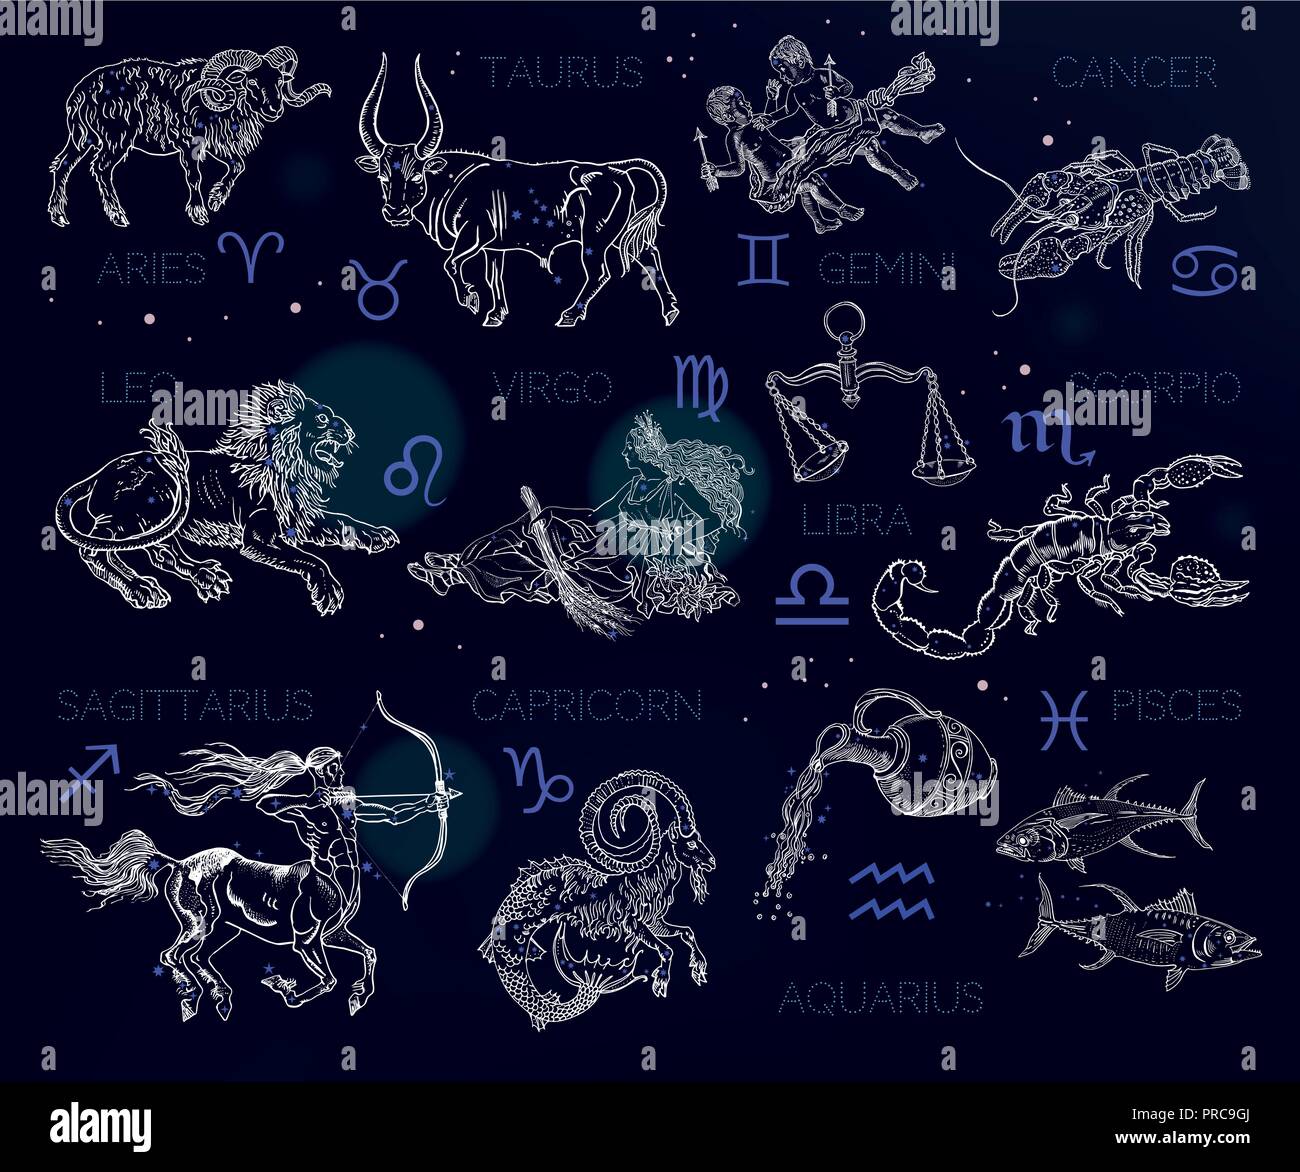 Constellations, zodiac signs, horoscope. Aries, Taurus, Gemini, Cancer, Leo, Virgo, Libra, Scorpio, Sagittarius, Capricorn, Aquarius, Pisces. Vintage engraving style symbols on a space background. Stock Vector